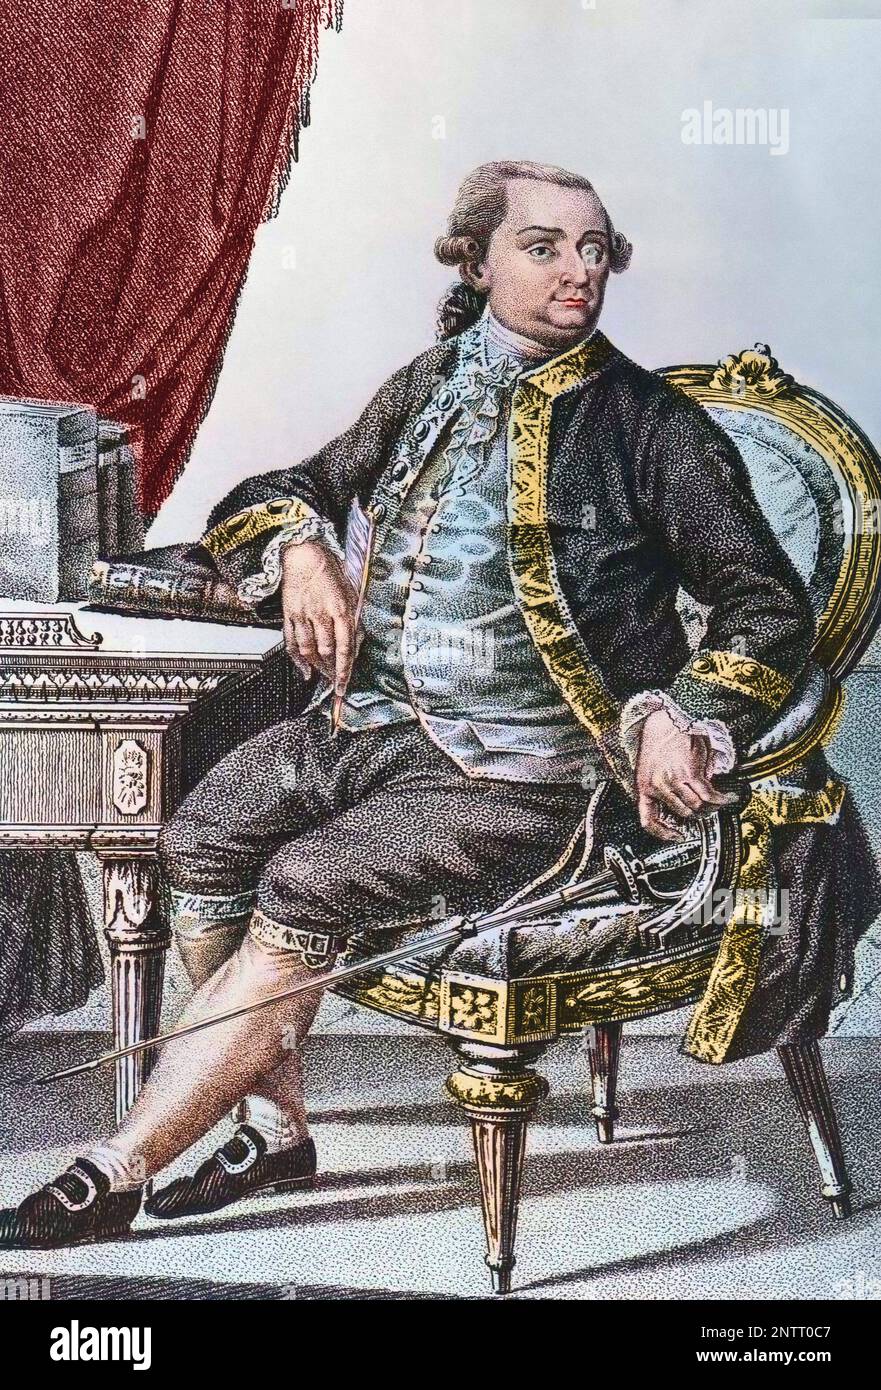 Portrait de Cesare Bonesana, marquis de Beccaria (1738 - 1794), juriste italien. Stock Photo